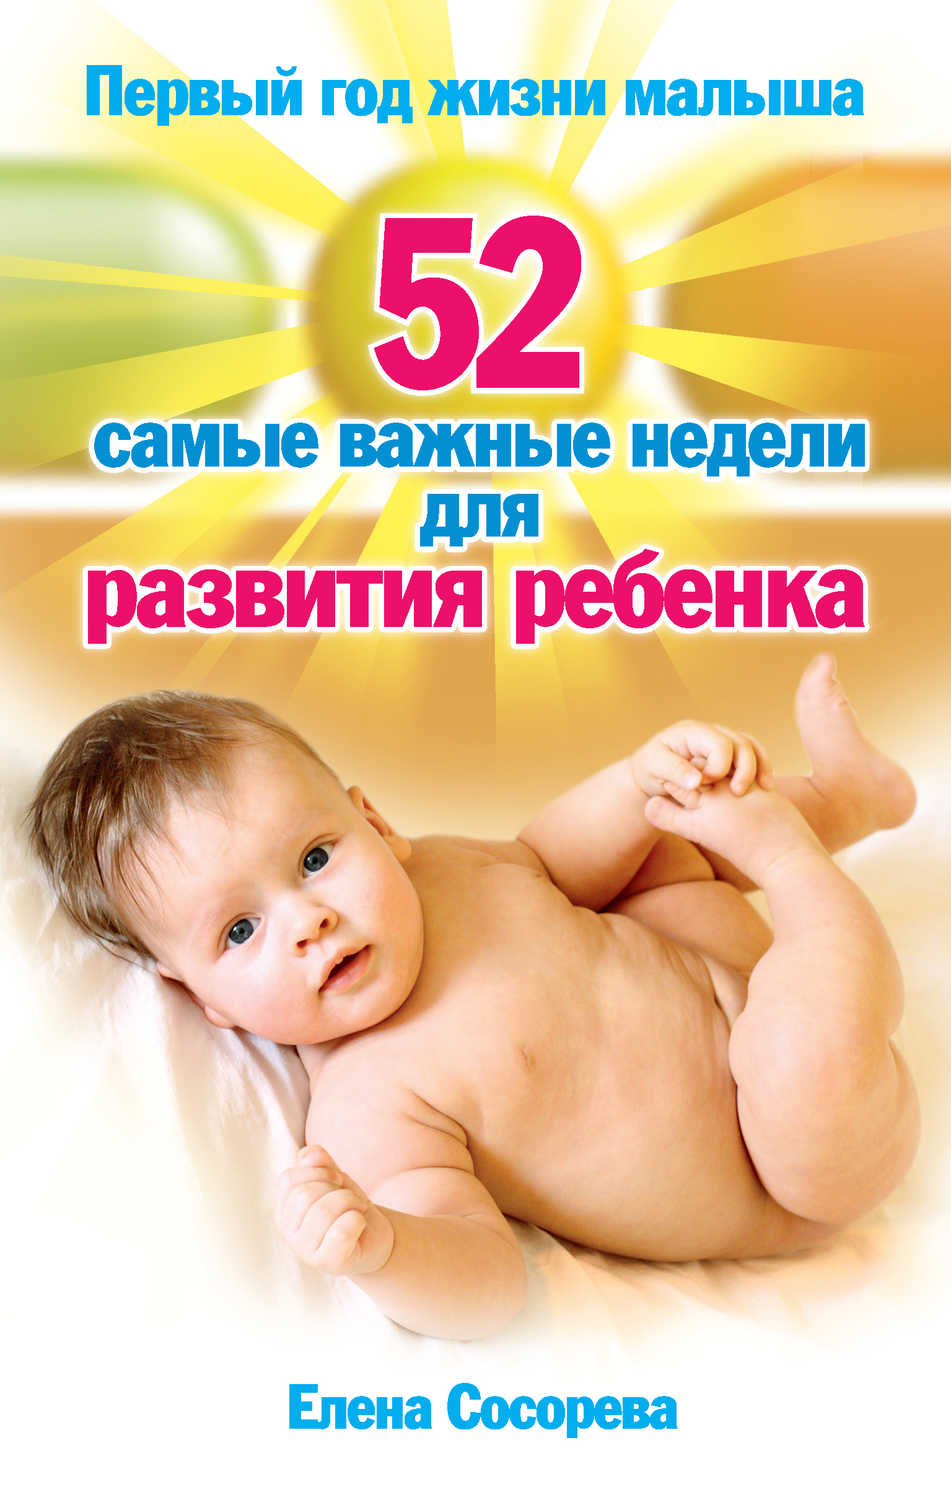 Сосорева Елена Петровна - «Первый год жизни малыша. 52 самые важные недели для развития ребенка»